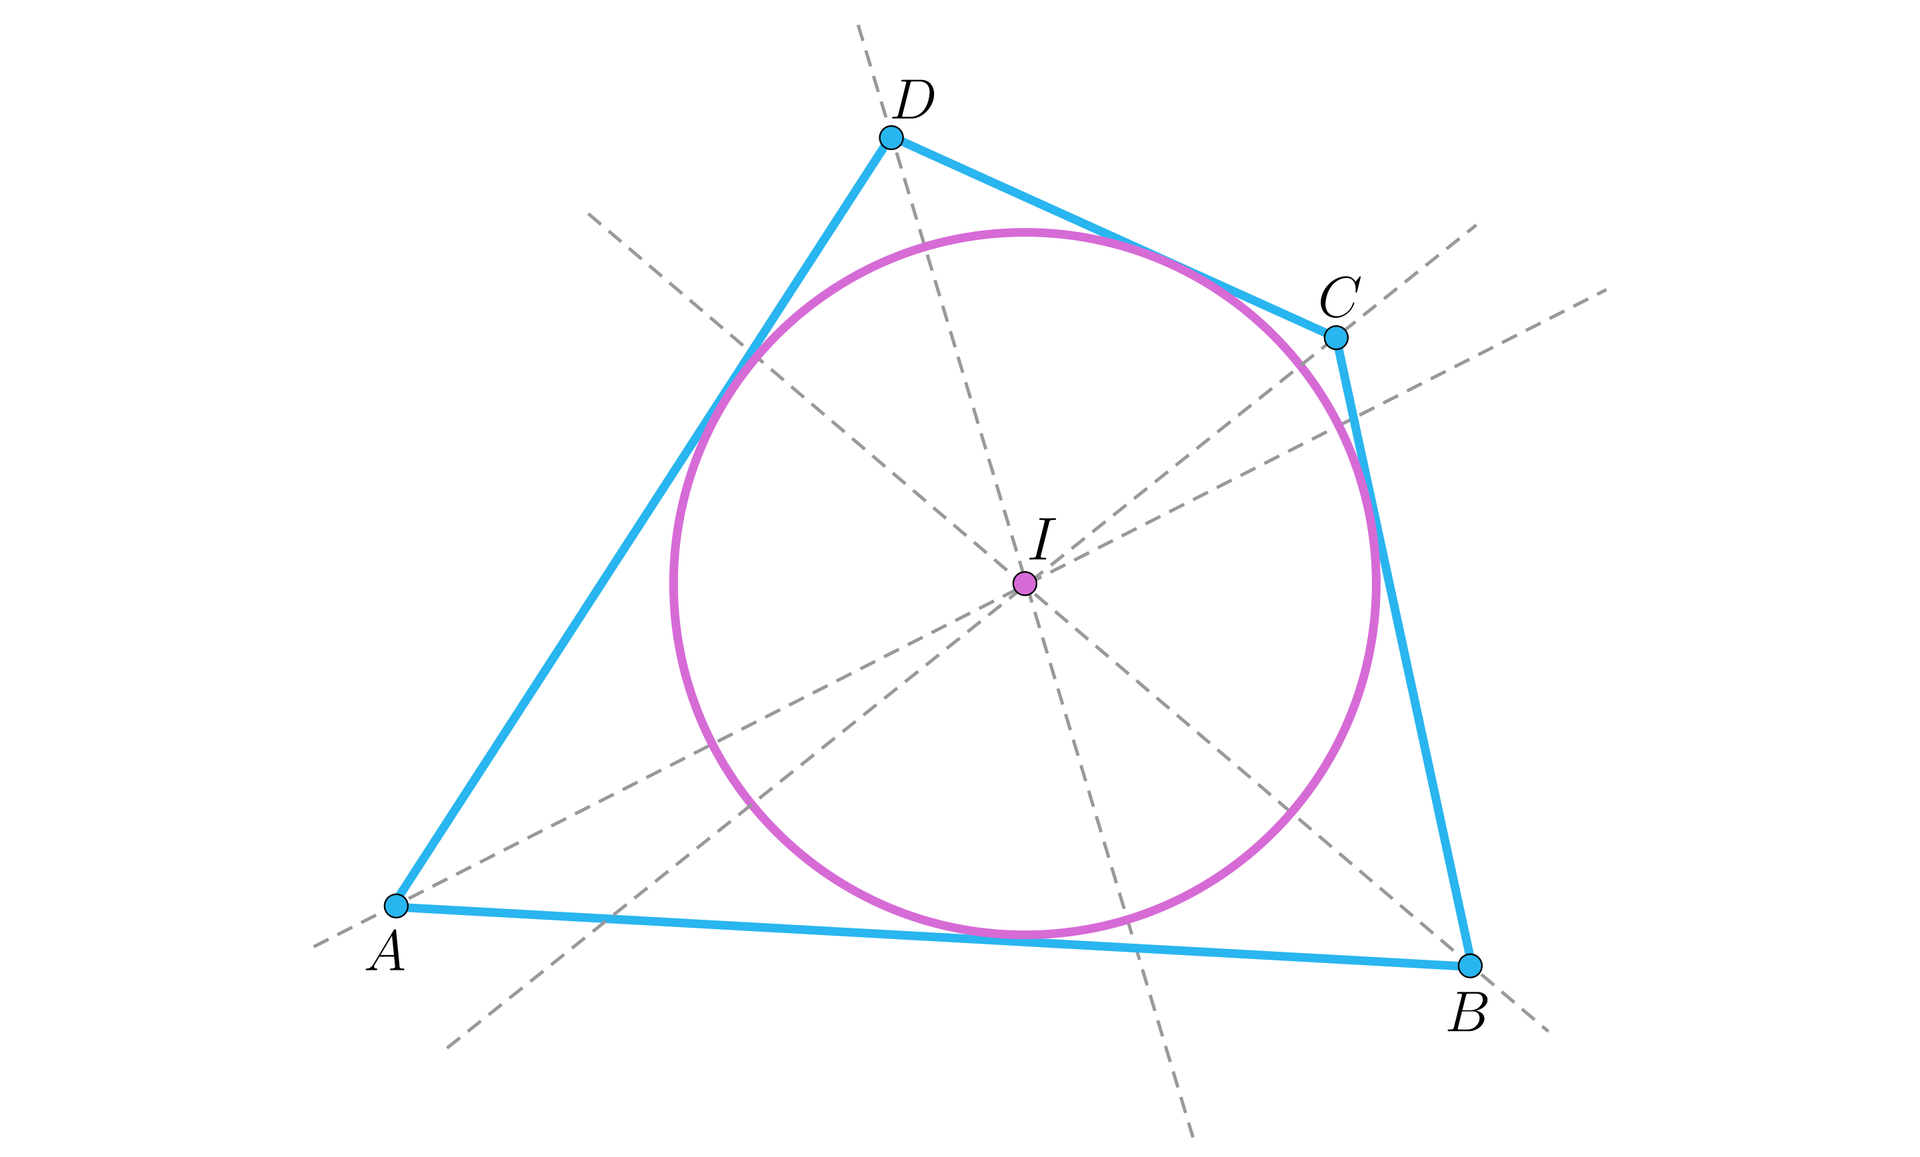 Ilustracja przedstawia okrąg o środku I wpisany w czworokąt ABCD. Przez każdy wierzchołek czworokąta przechodzą dwusieczne które przecinają również środek okręgu.